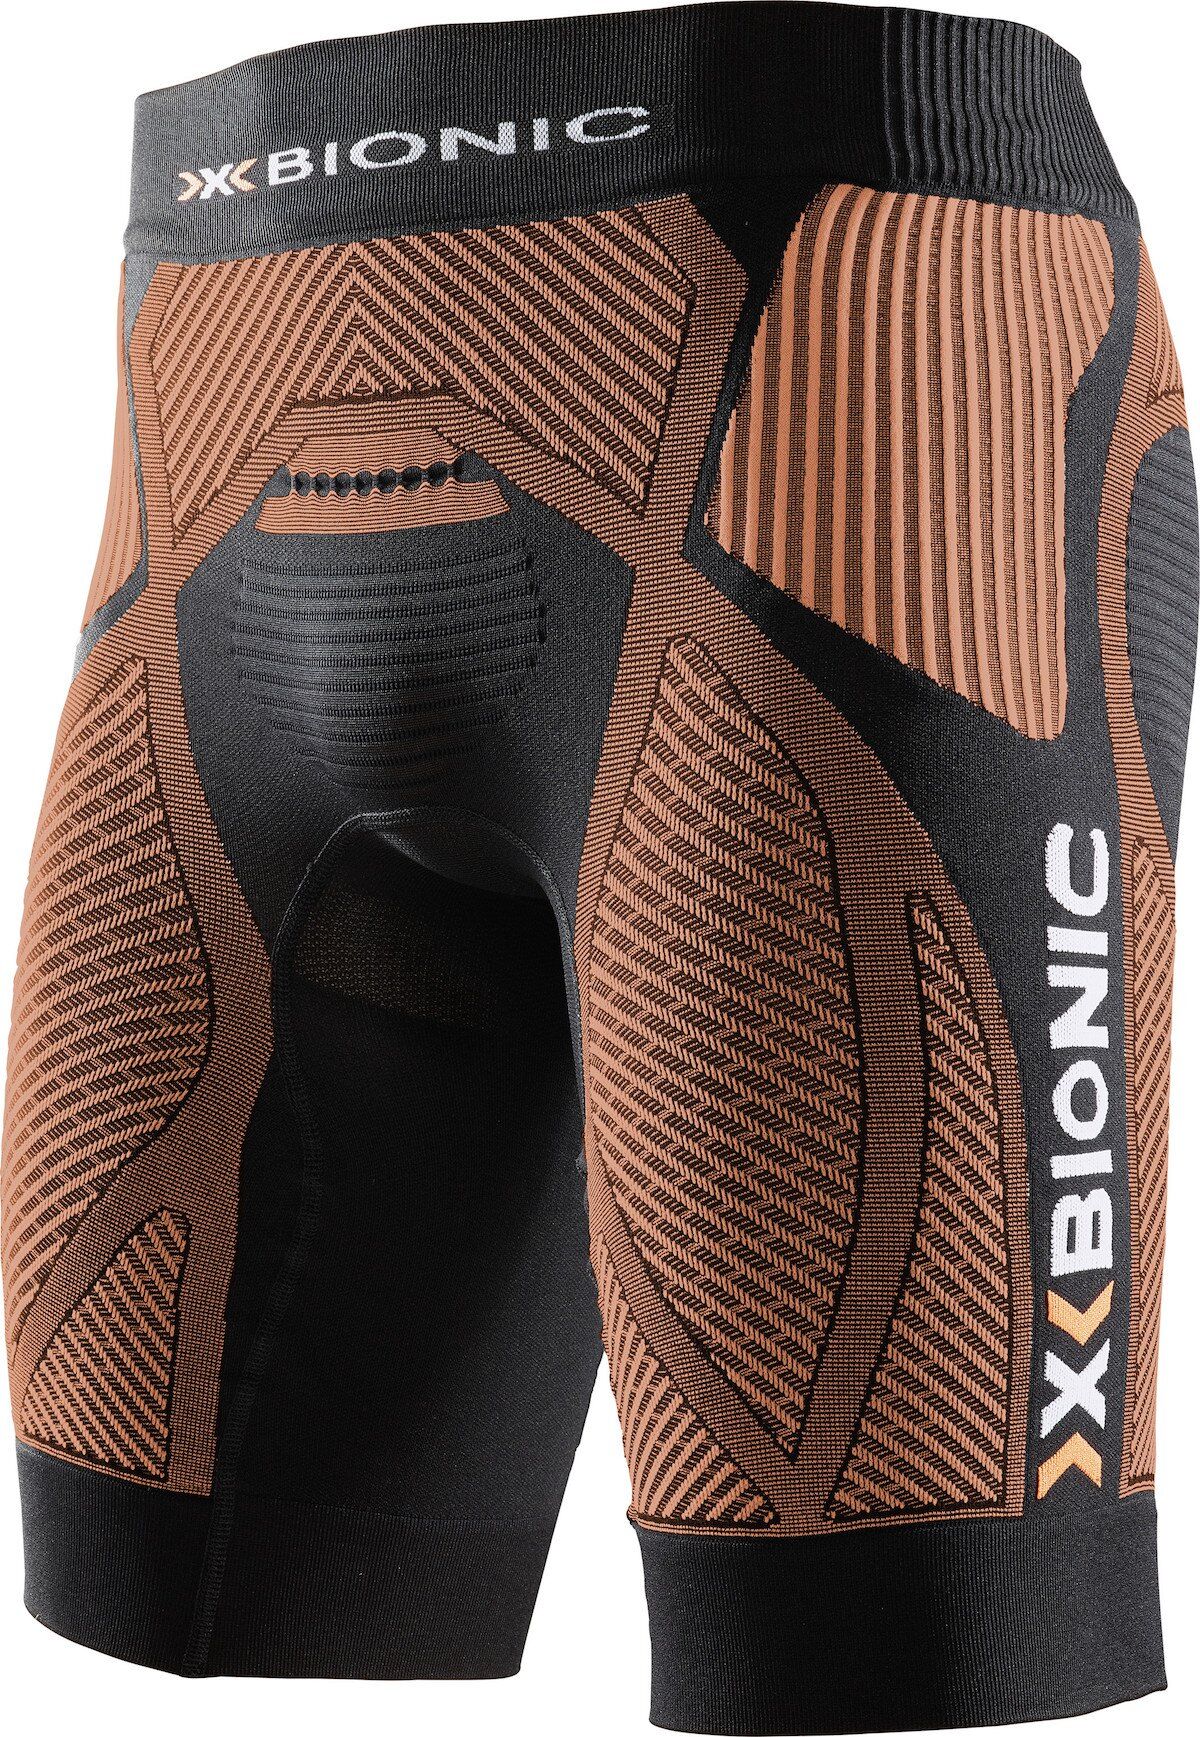 X-Bionic The Trick - Laufshorts - Herren